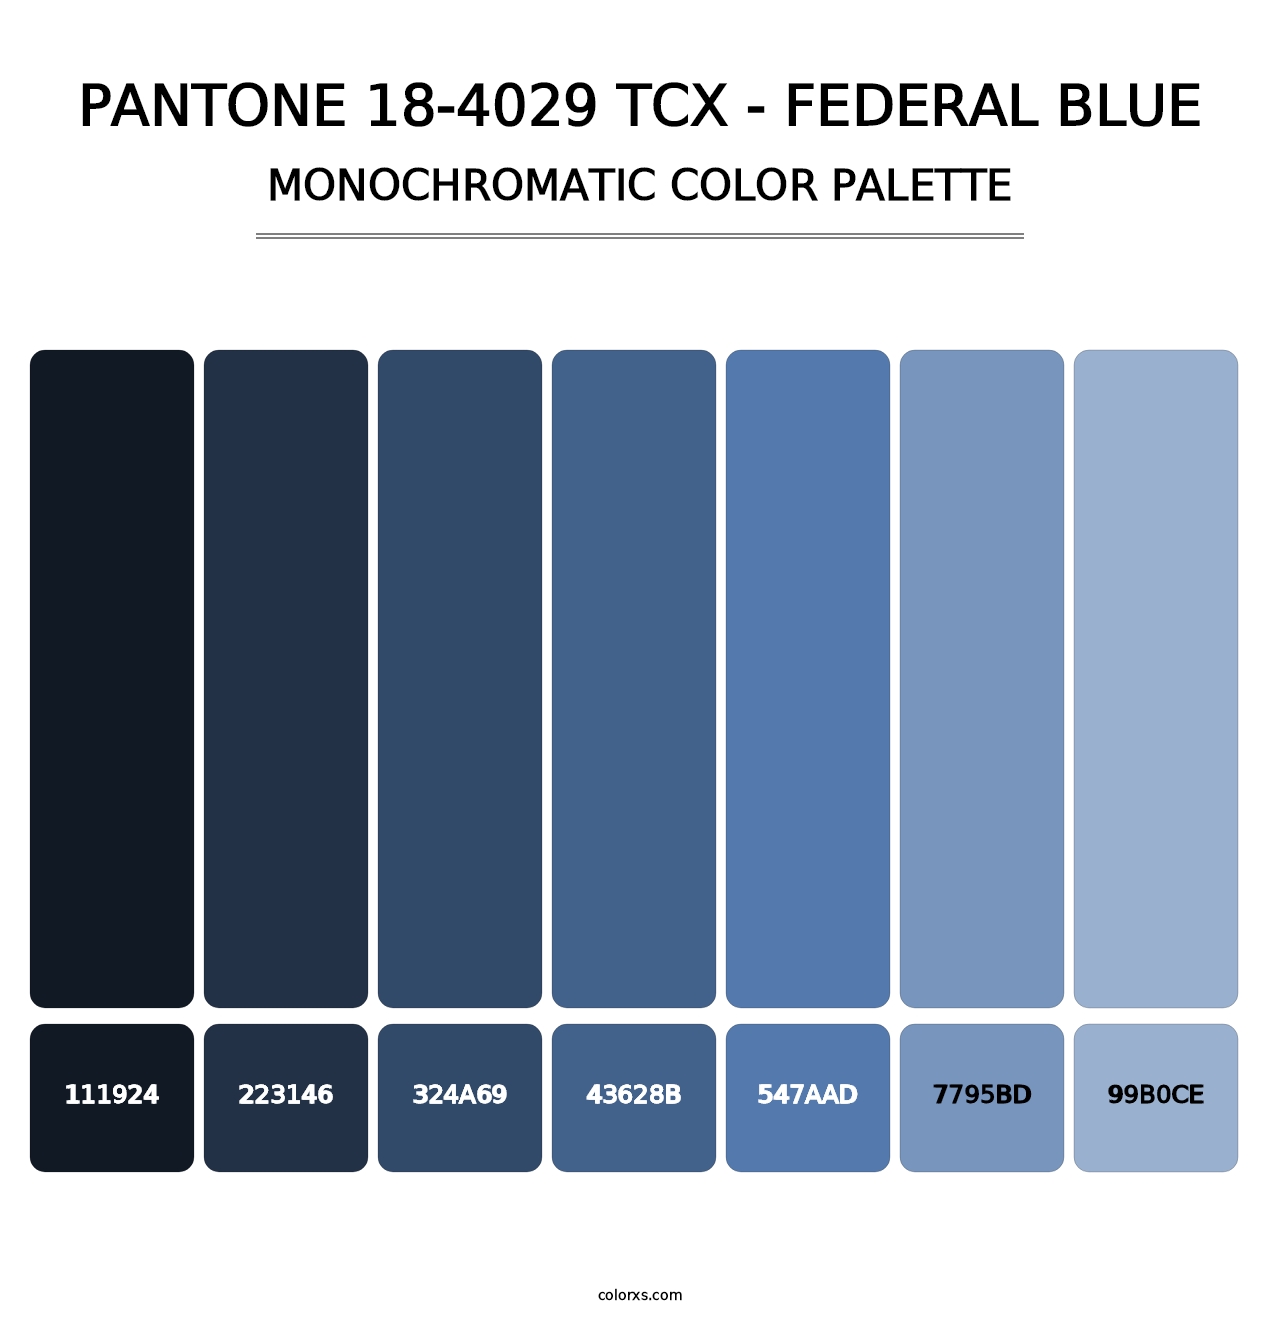 PANTONE 18-4029 TCX - Federal Blue - Monochromatic Color Palette